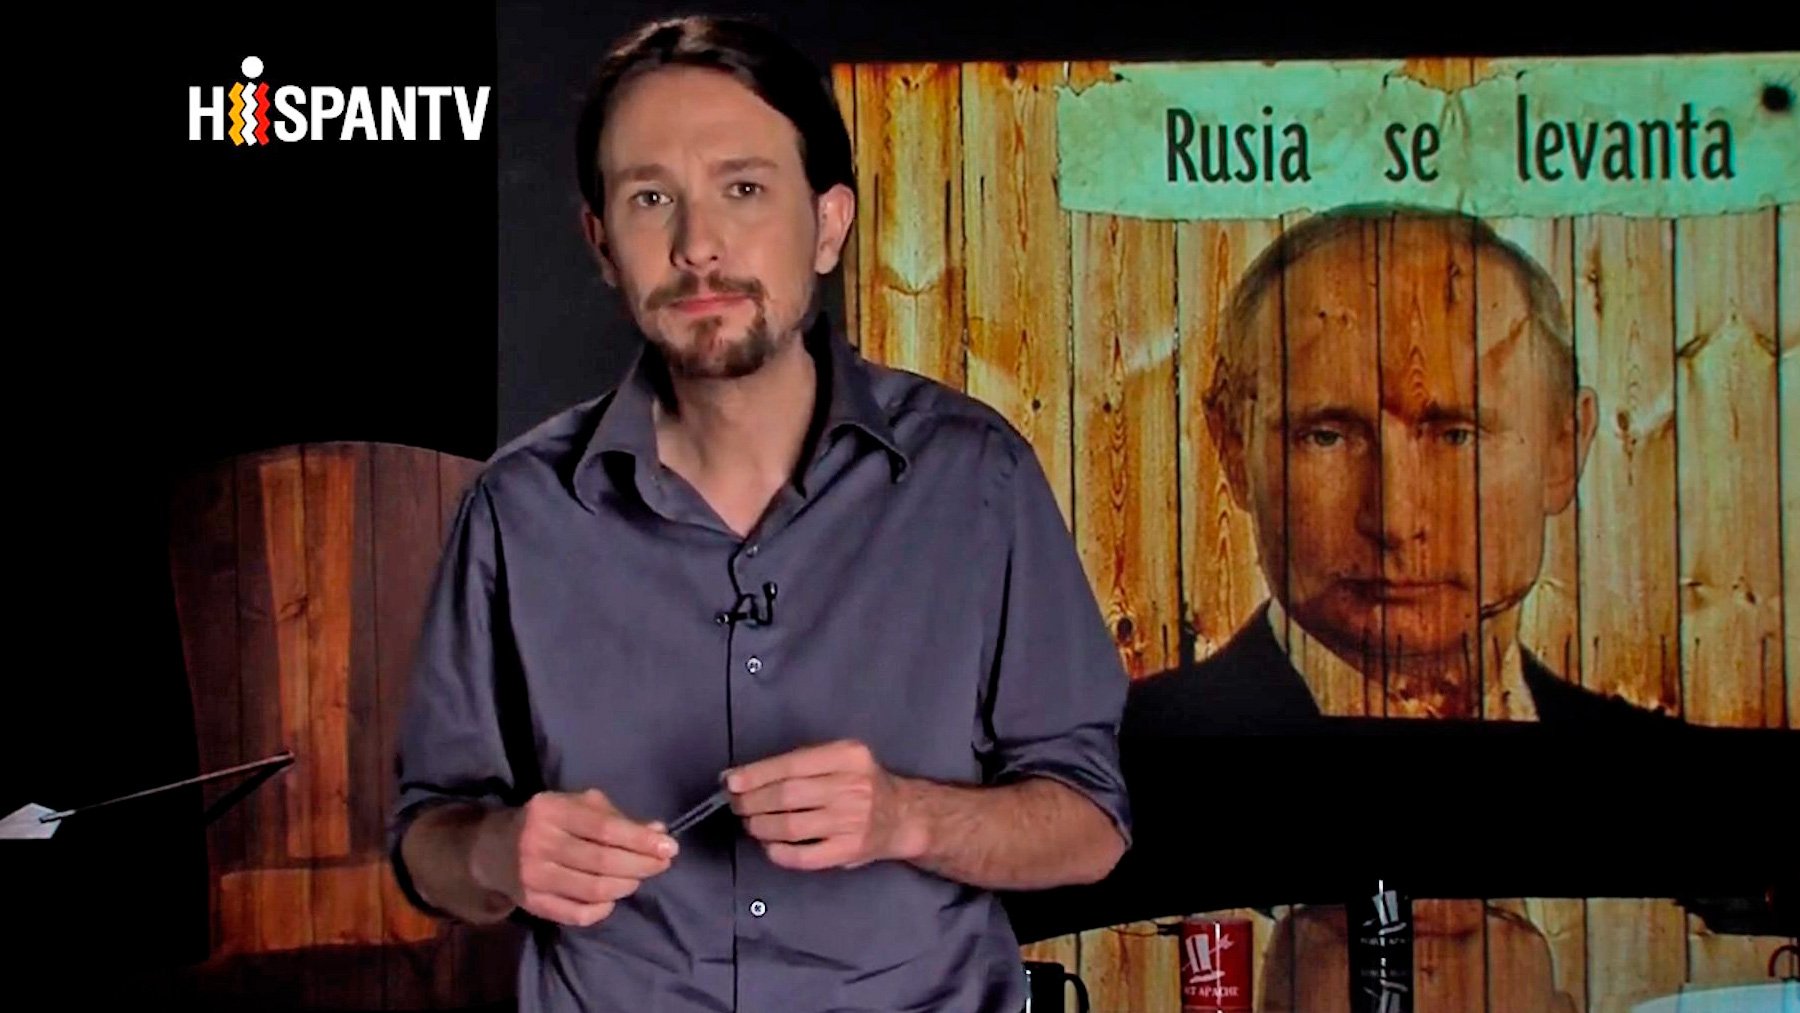 Pablo Iglesias con una imagen de Putin en uno de sus programas en Hispan TV.